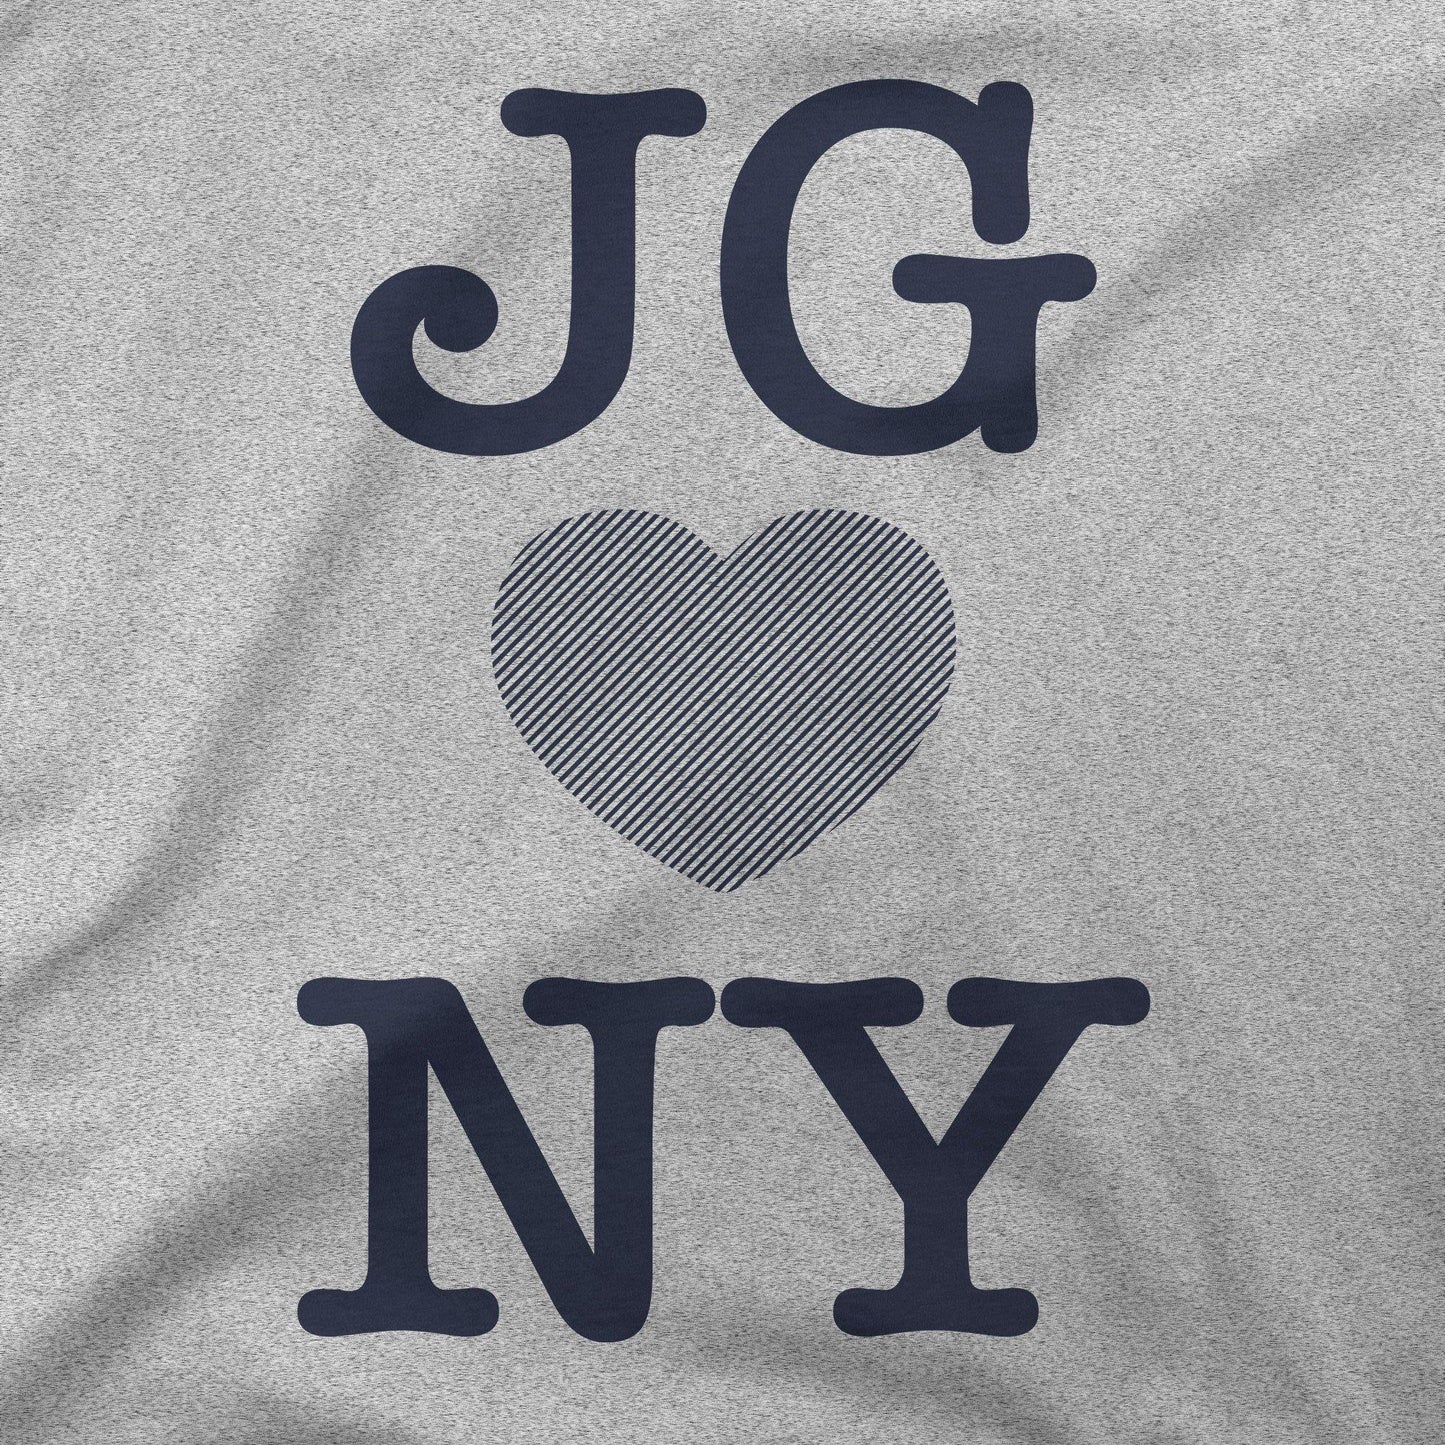 JG ♥ NY | T-Shirt - Jomboy Media